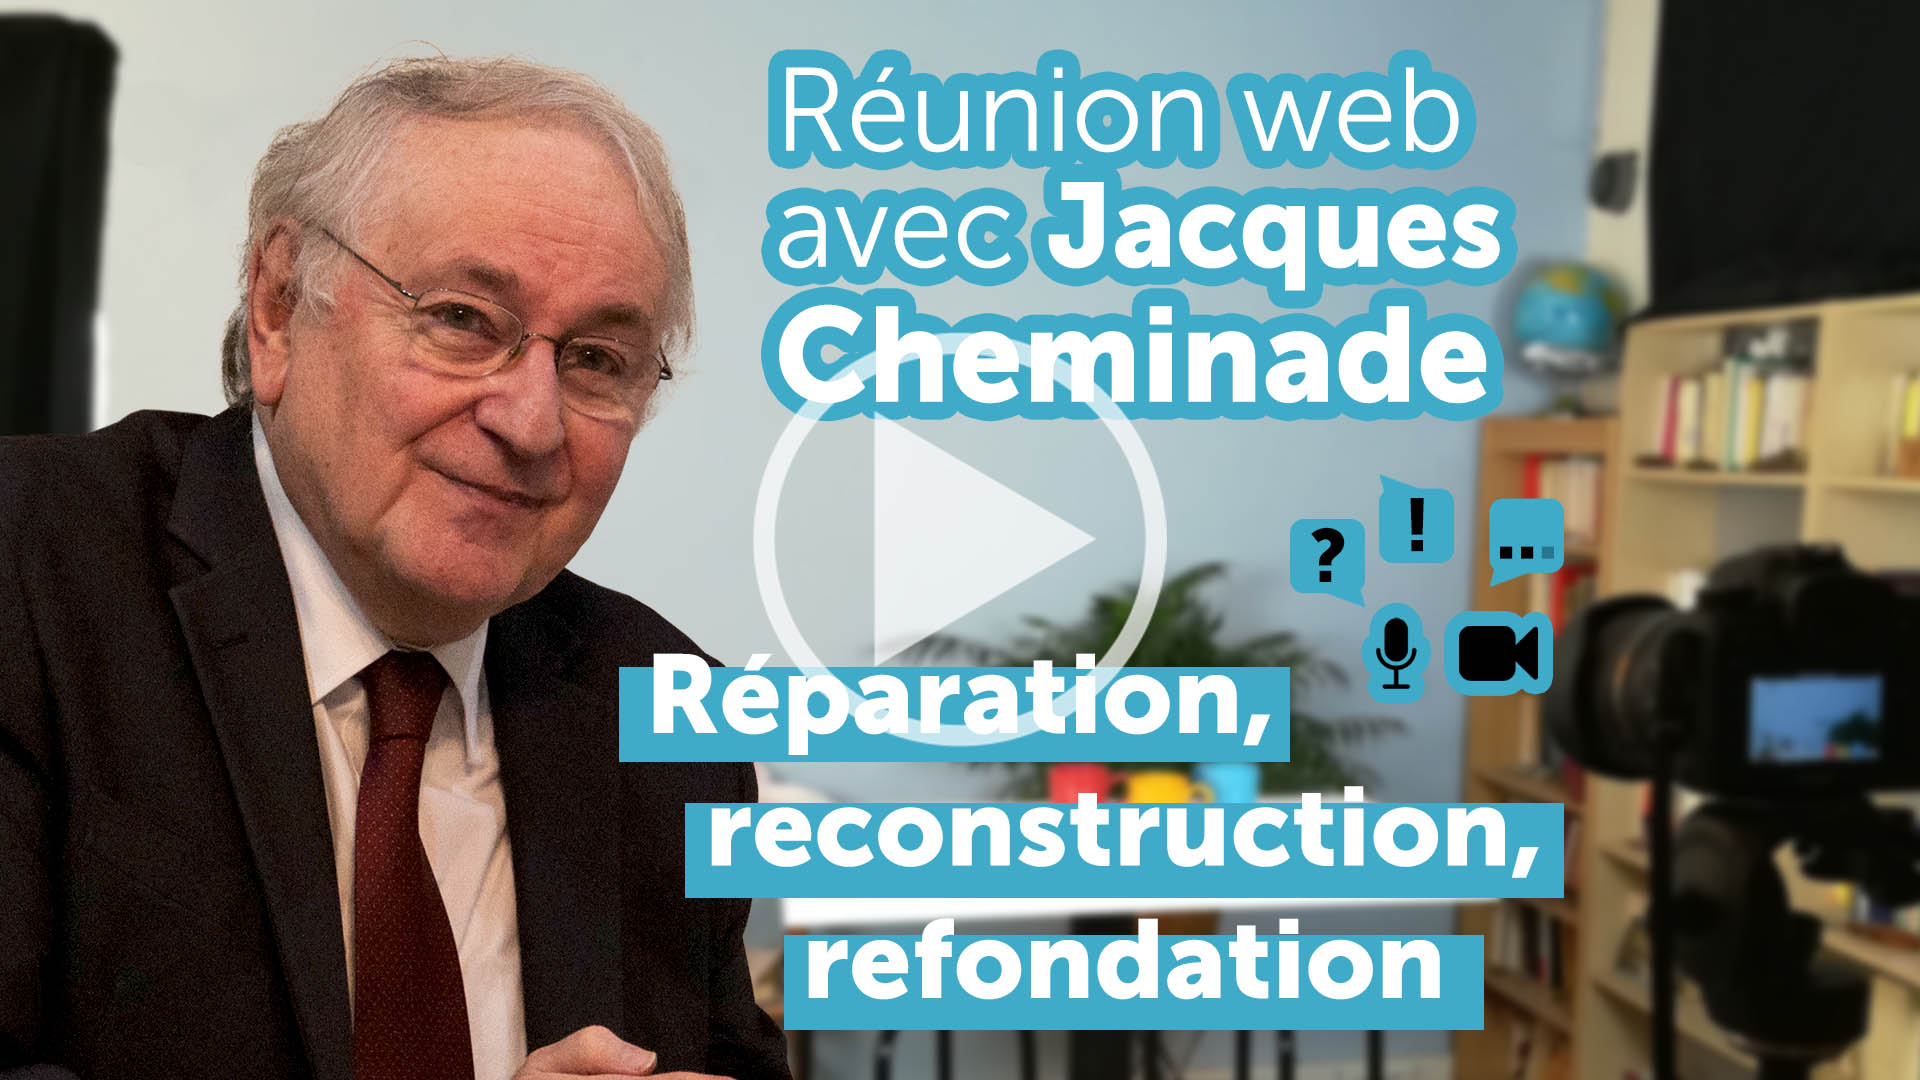 Réunion web avec Jacques Cheminade - 28 mai